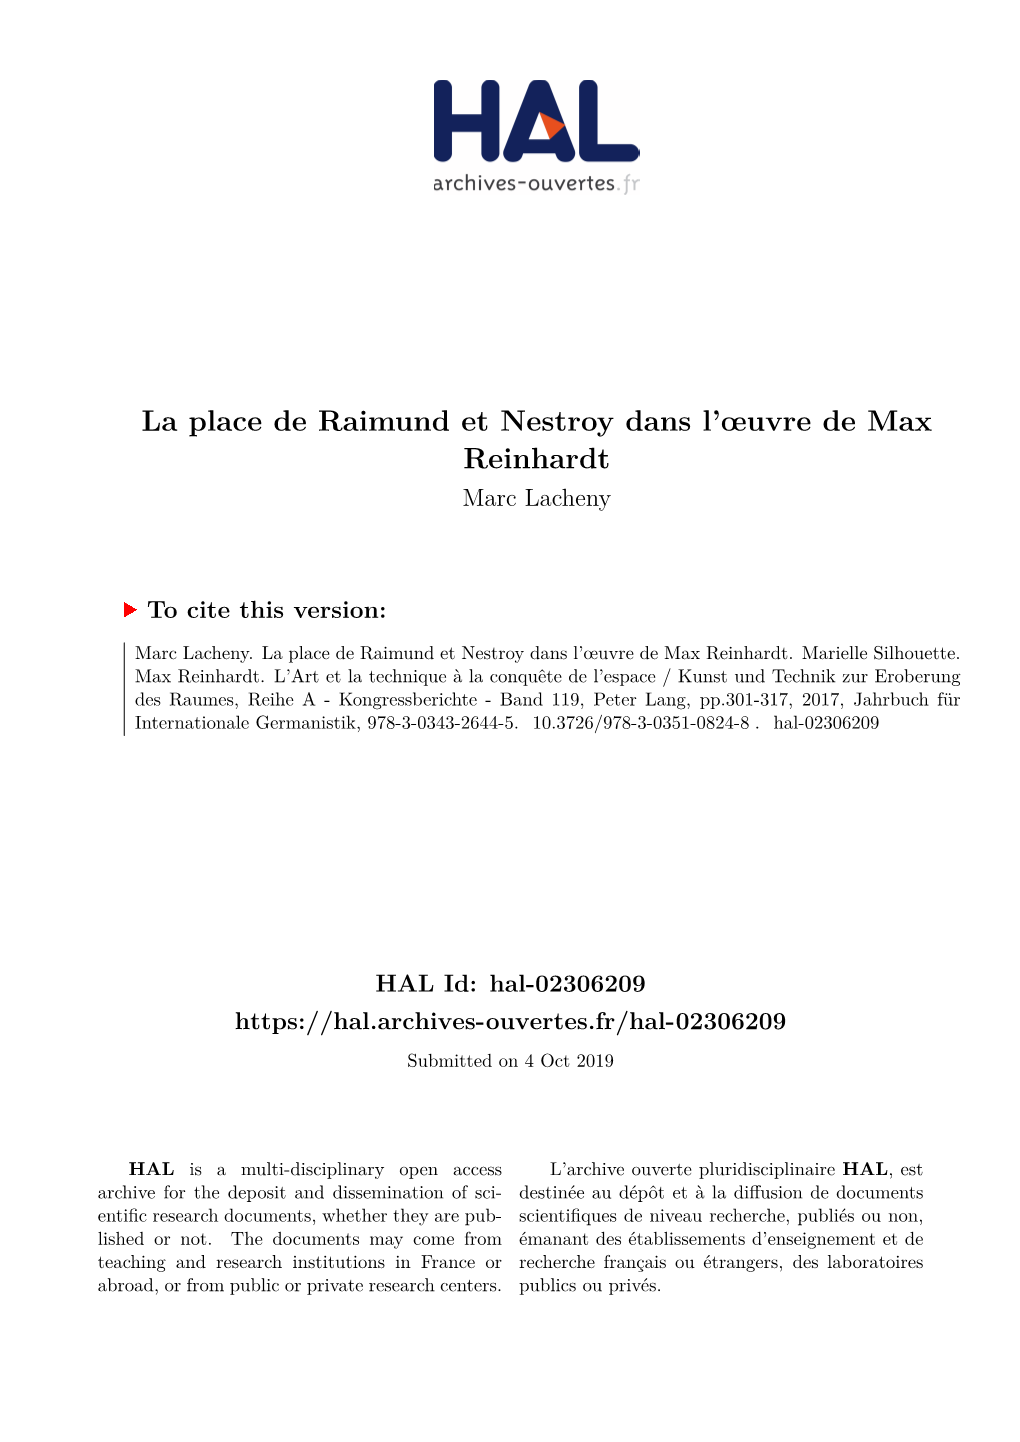 La Place De Raimund Et Nestroy Dans L'œuvre De Max Reinhardt